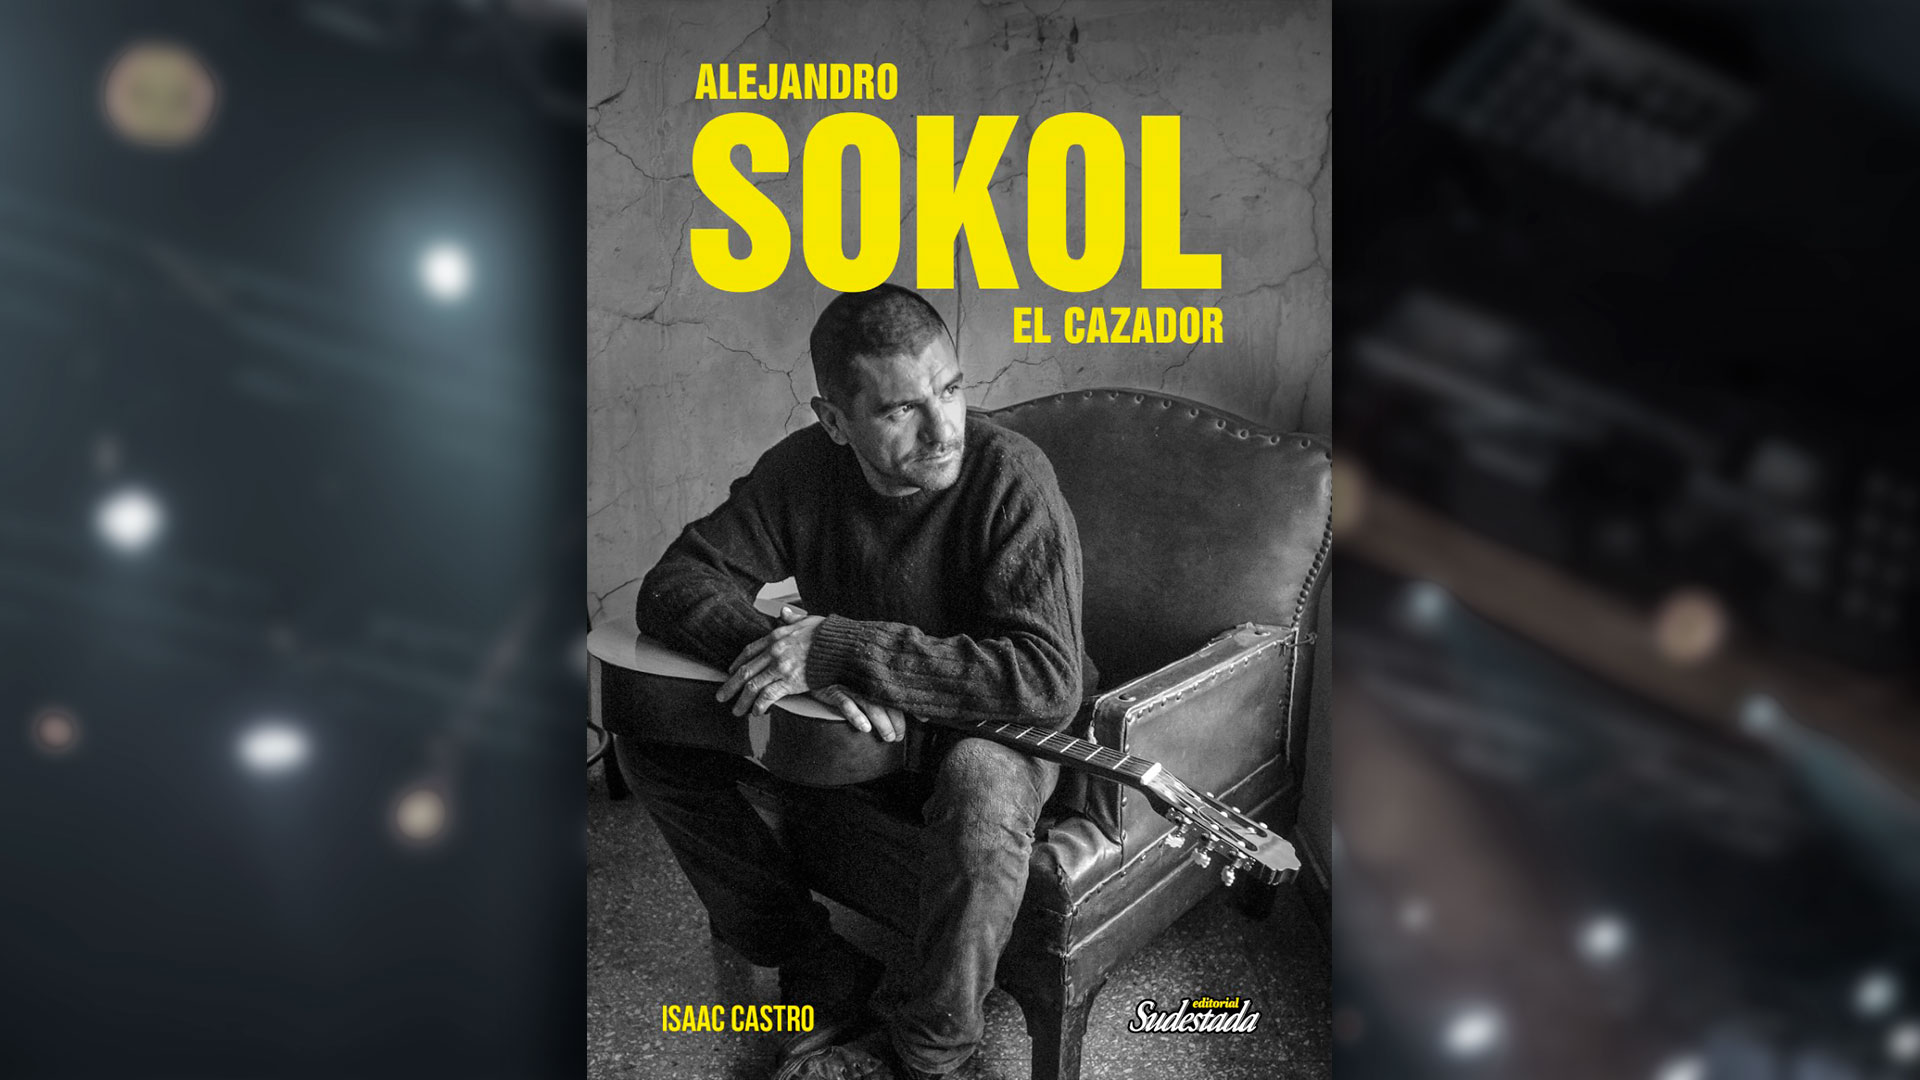 La portada de "Alejandro Sokol, el cazador"